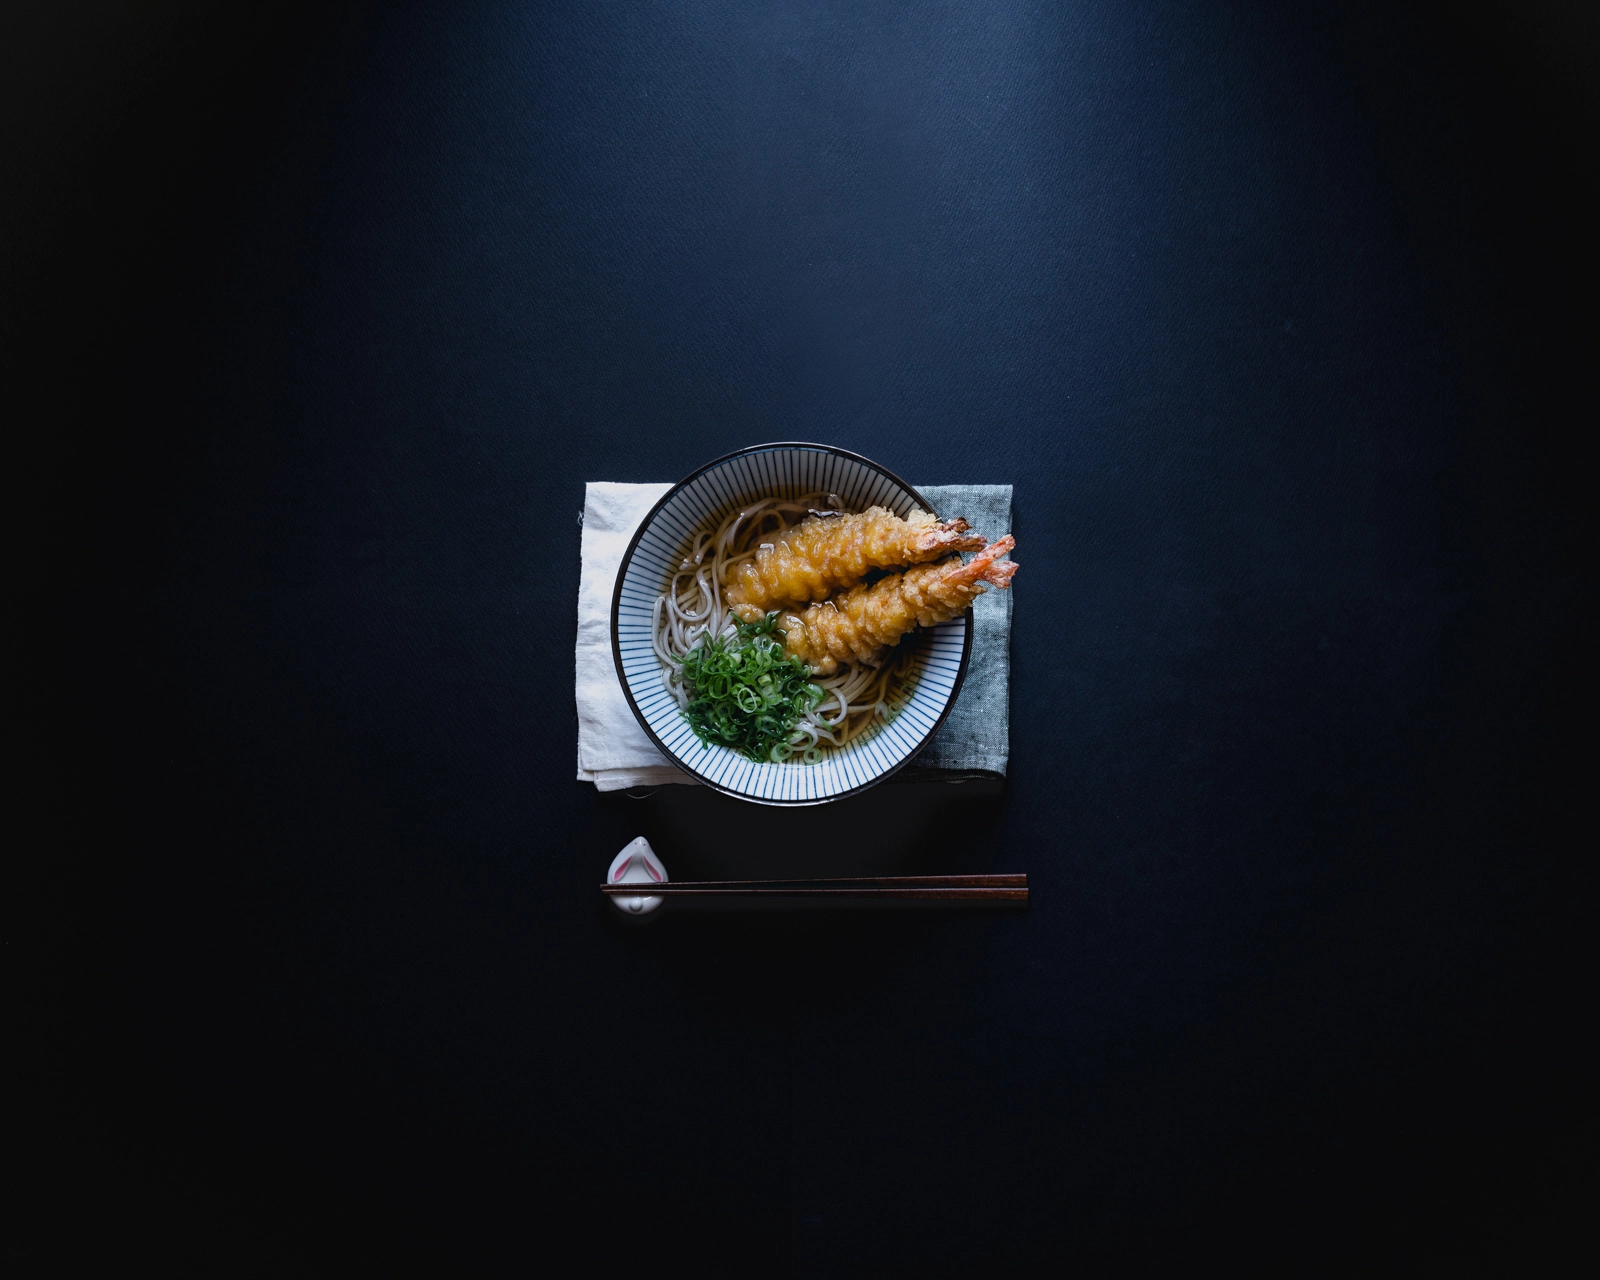 Nikon D610 + AF-S Nikkor 35mm f/1.8G sample photo. Soba noodles with crunchy shrimp tempura. photography